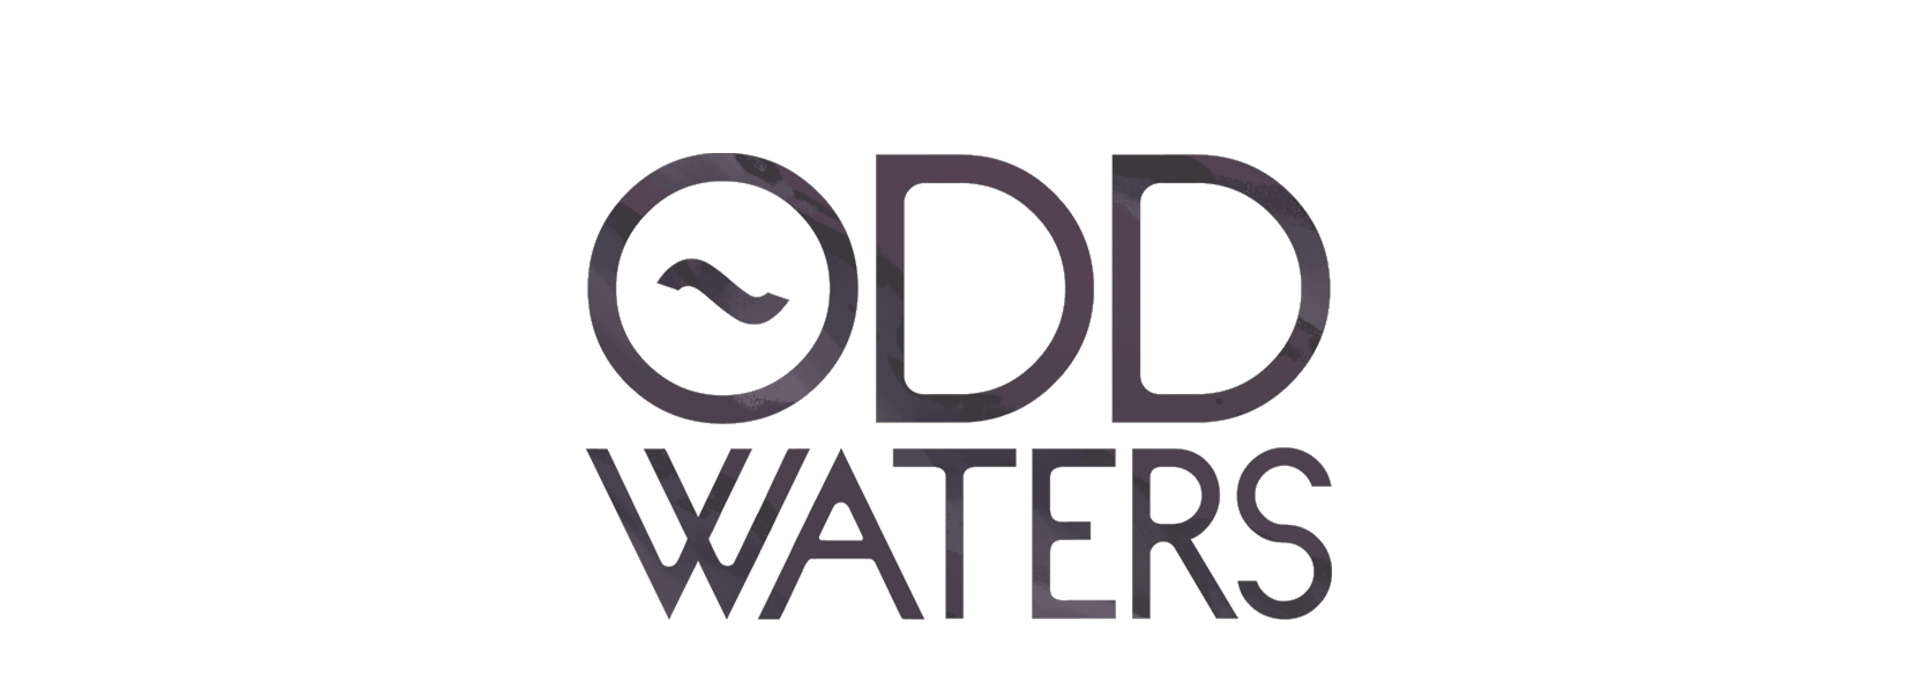 Odd Waters